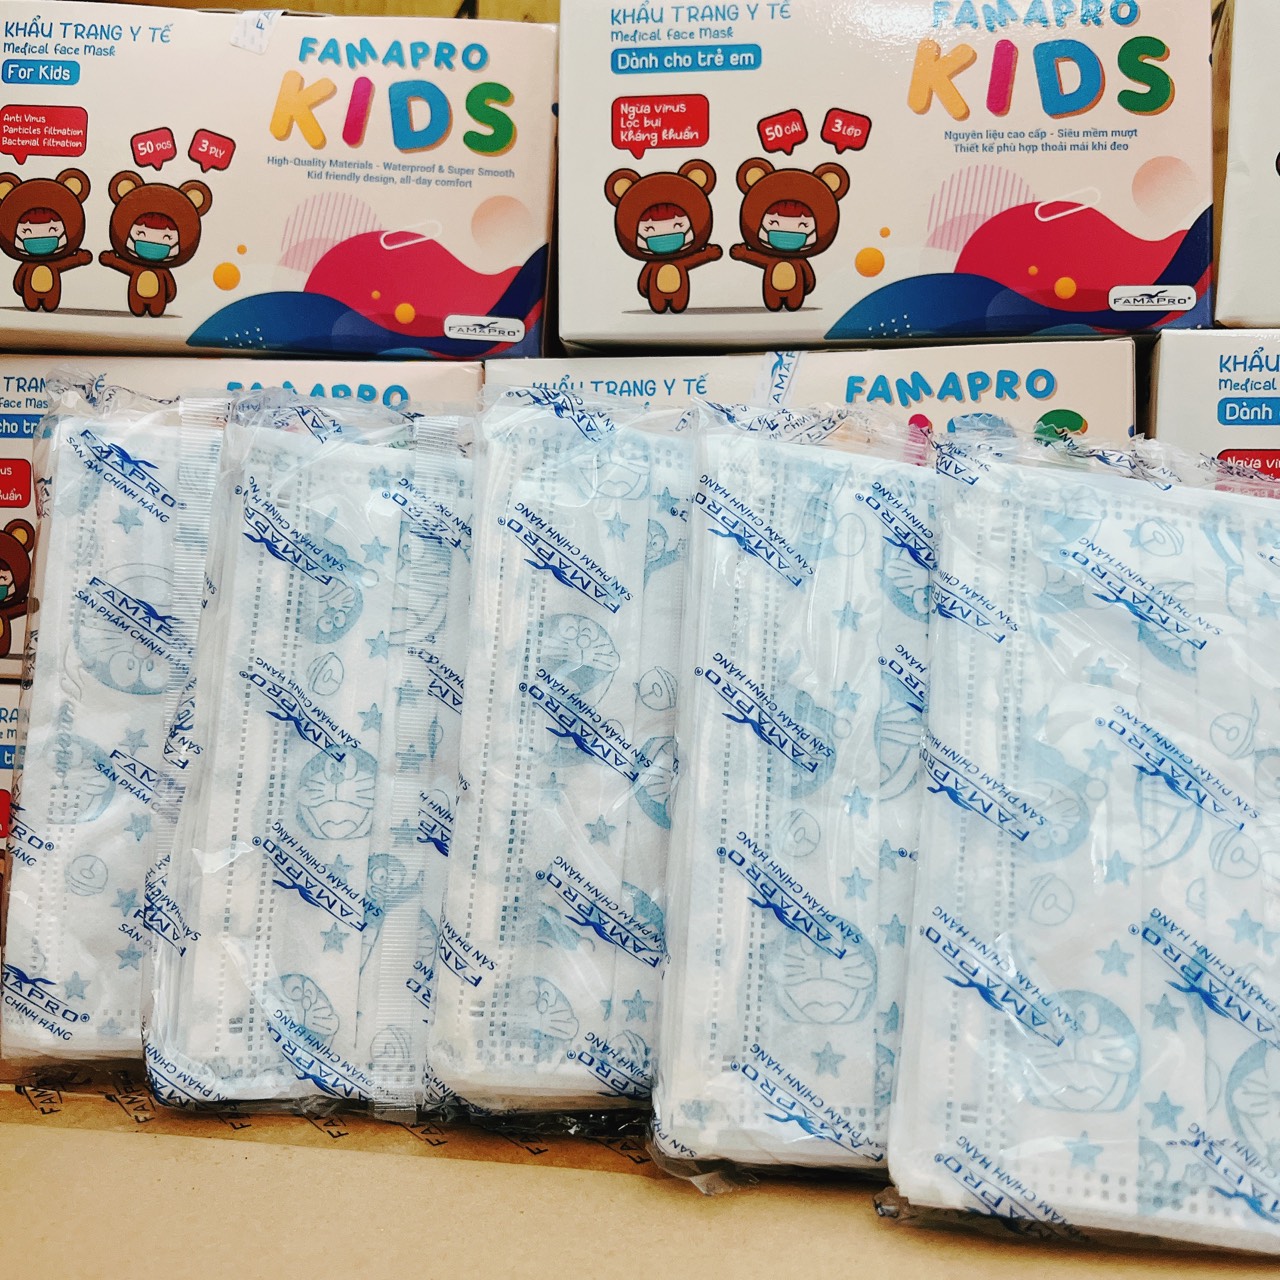 1 hộp Khẩu trang y tế Famapro cho bé kháng khuẩn hộp 50 chiếc  khẩu trang trẻ em mask kid ngăn ngừa khói bụi độc hại cho bé trai lẫn bé gái